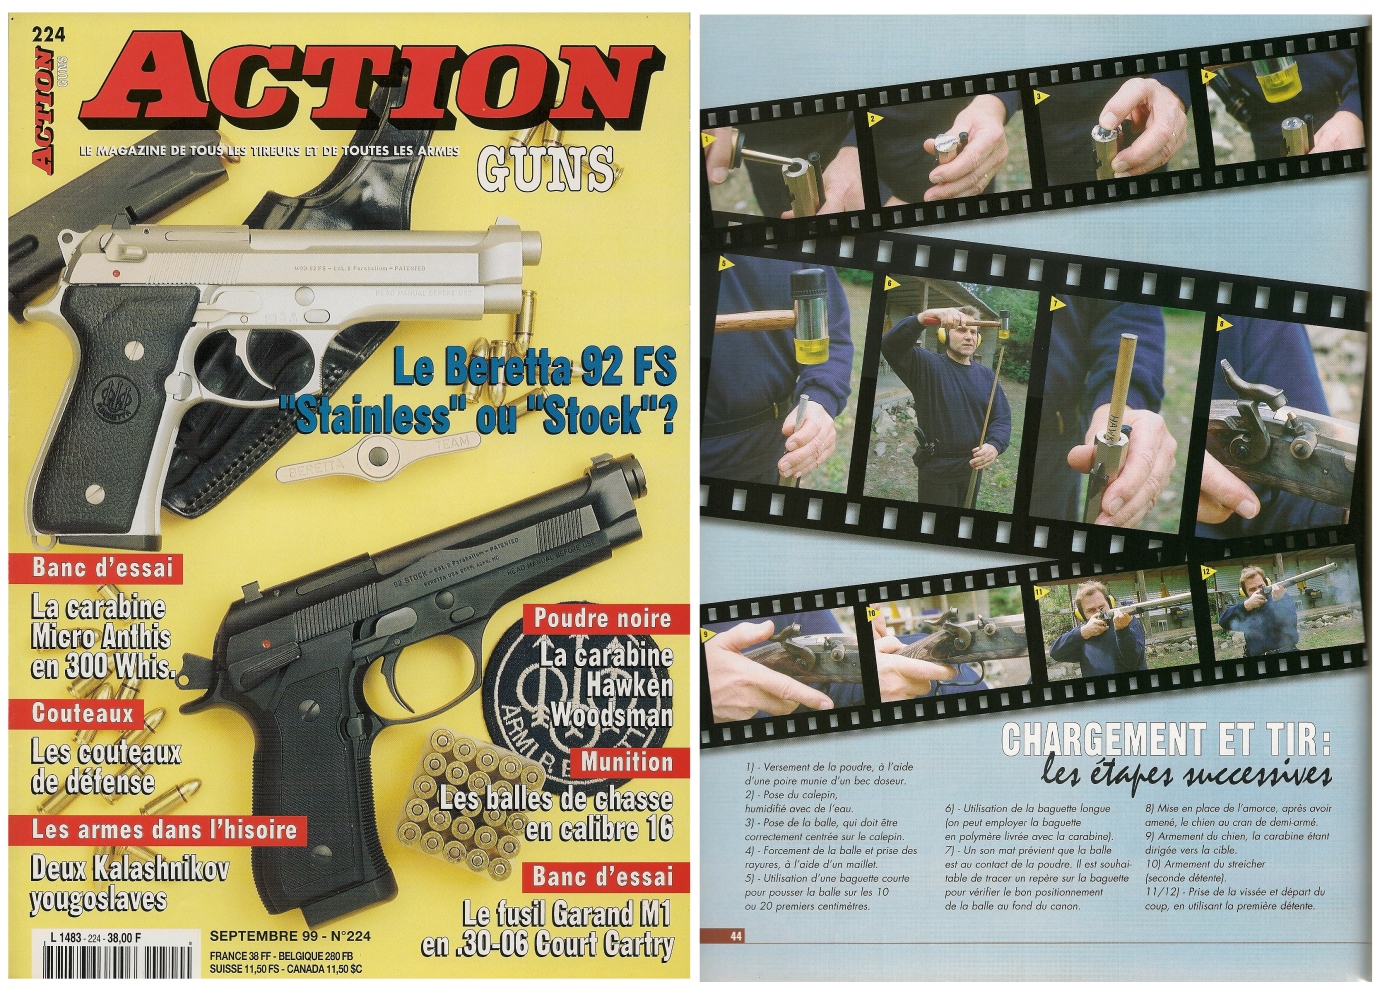 Le banc d’essai de la carabine Hawken Woodsman a été publié sur 5 pages dans le magazine Action Guns n° 224 (septembre 1999). 